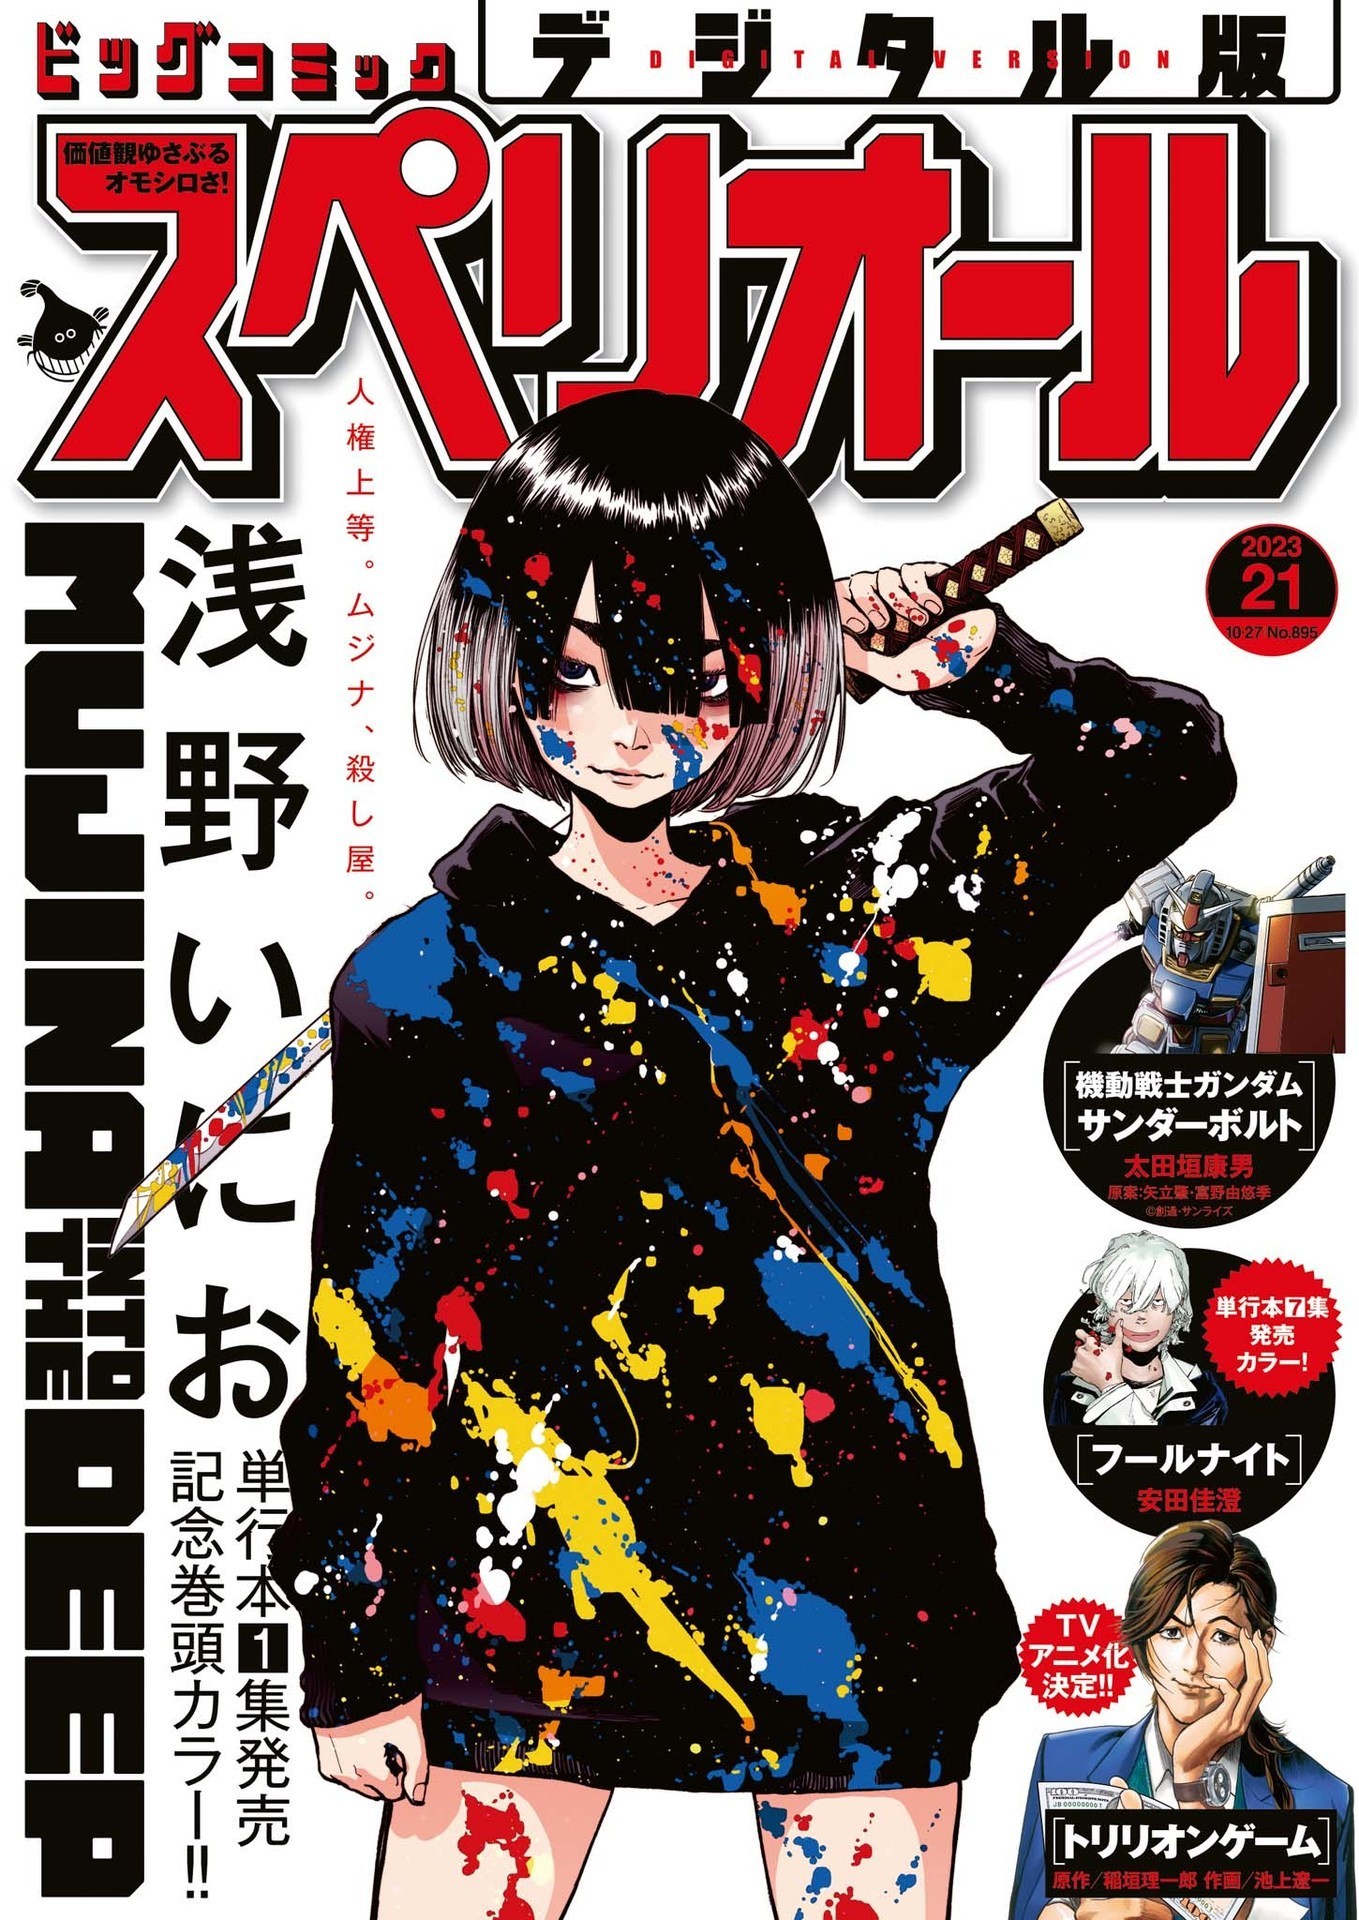 TOP vendas light novel no Japão – 16 a 22 de Outubro de 2023